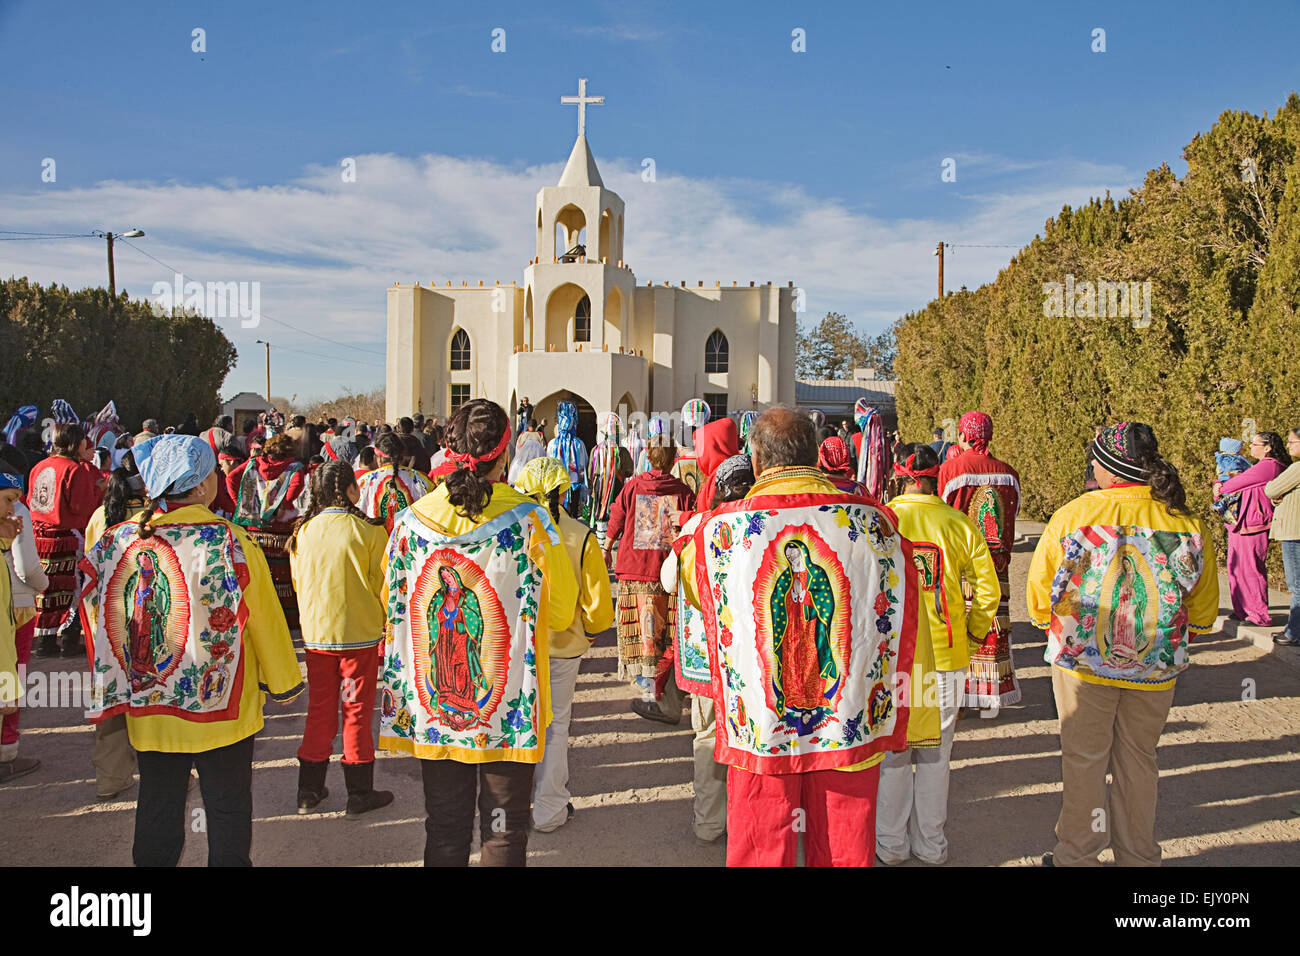 Le village de Tortugas près de Las Cruces au Nouveau Mexique célèbre la Vierge de Guadalupe Fête avec danses colorées Banque D'Images